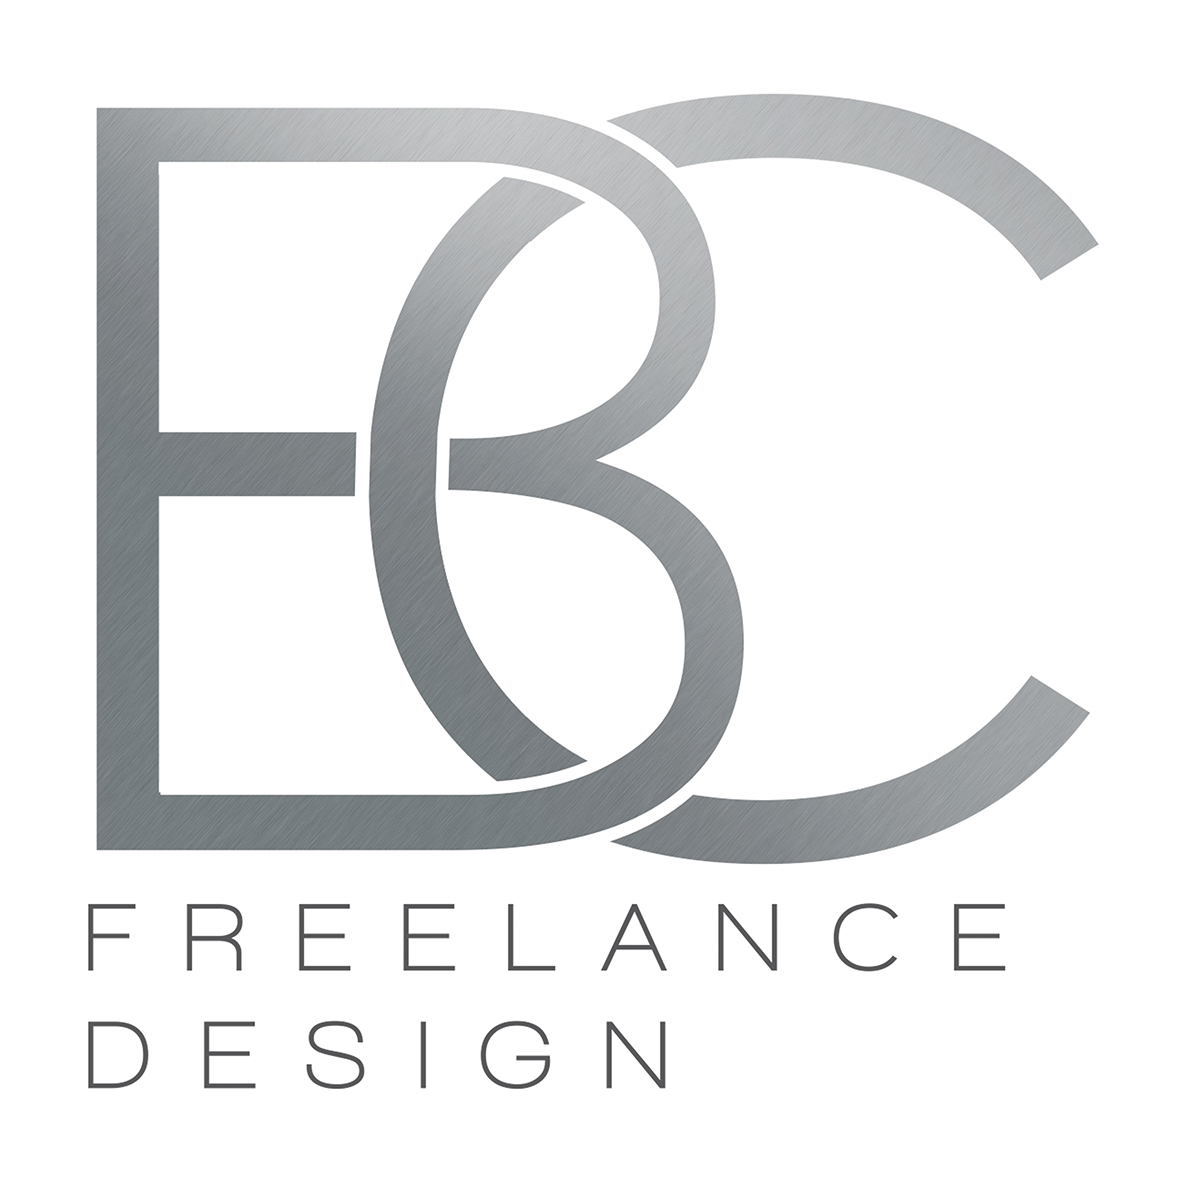 BC freelance design - Tourism Caloundra